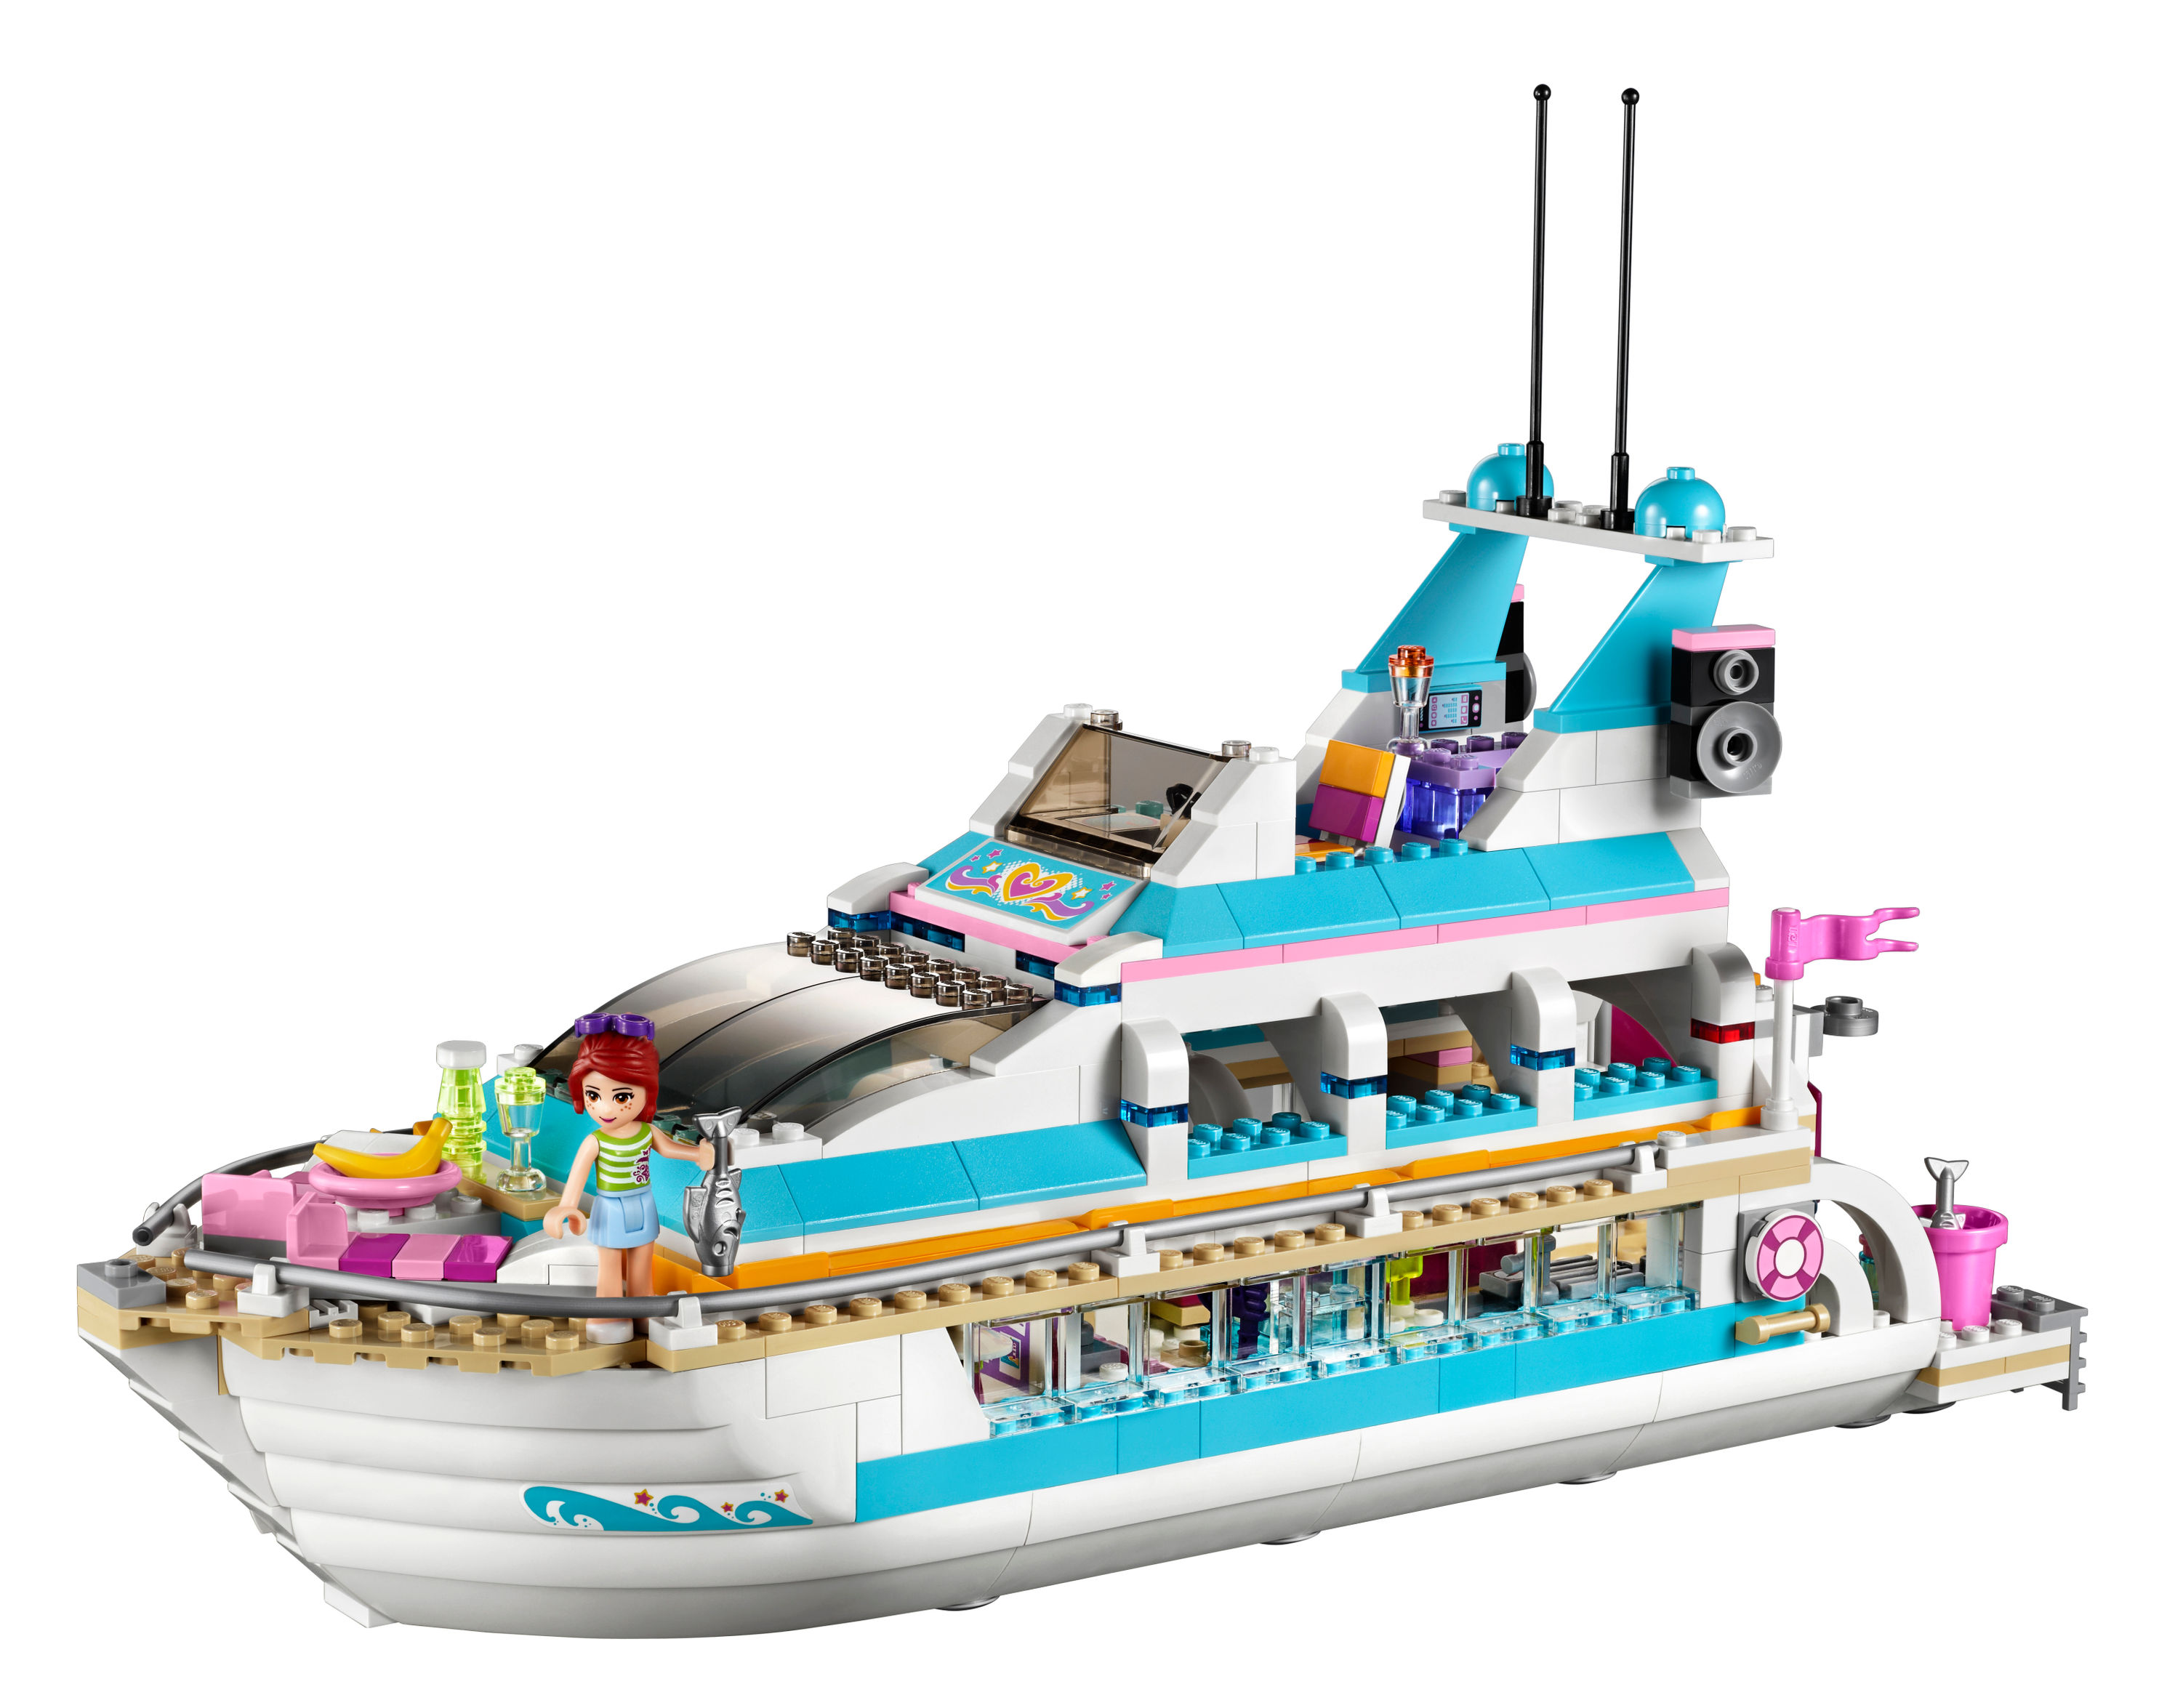 LEGO® 41015 Friends - Yacht jetzt bei Weltbild.de bestellen